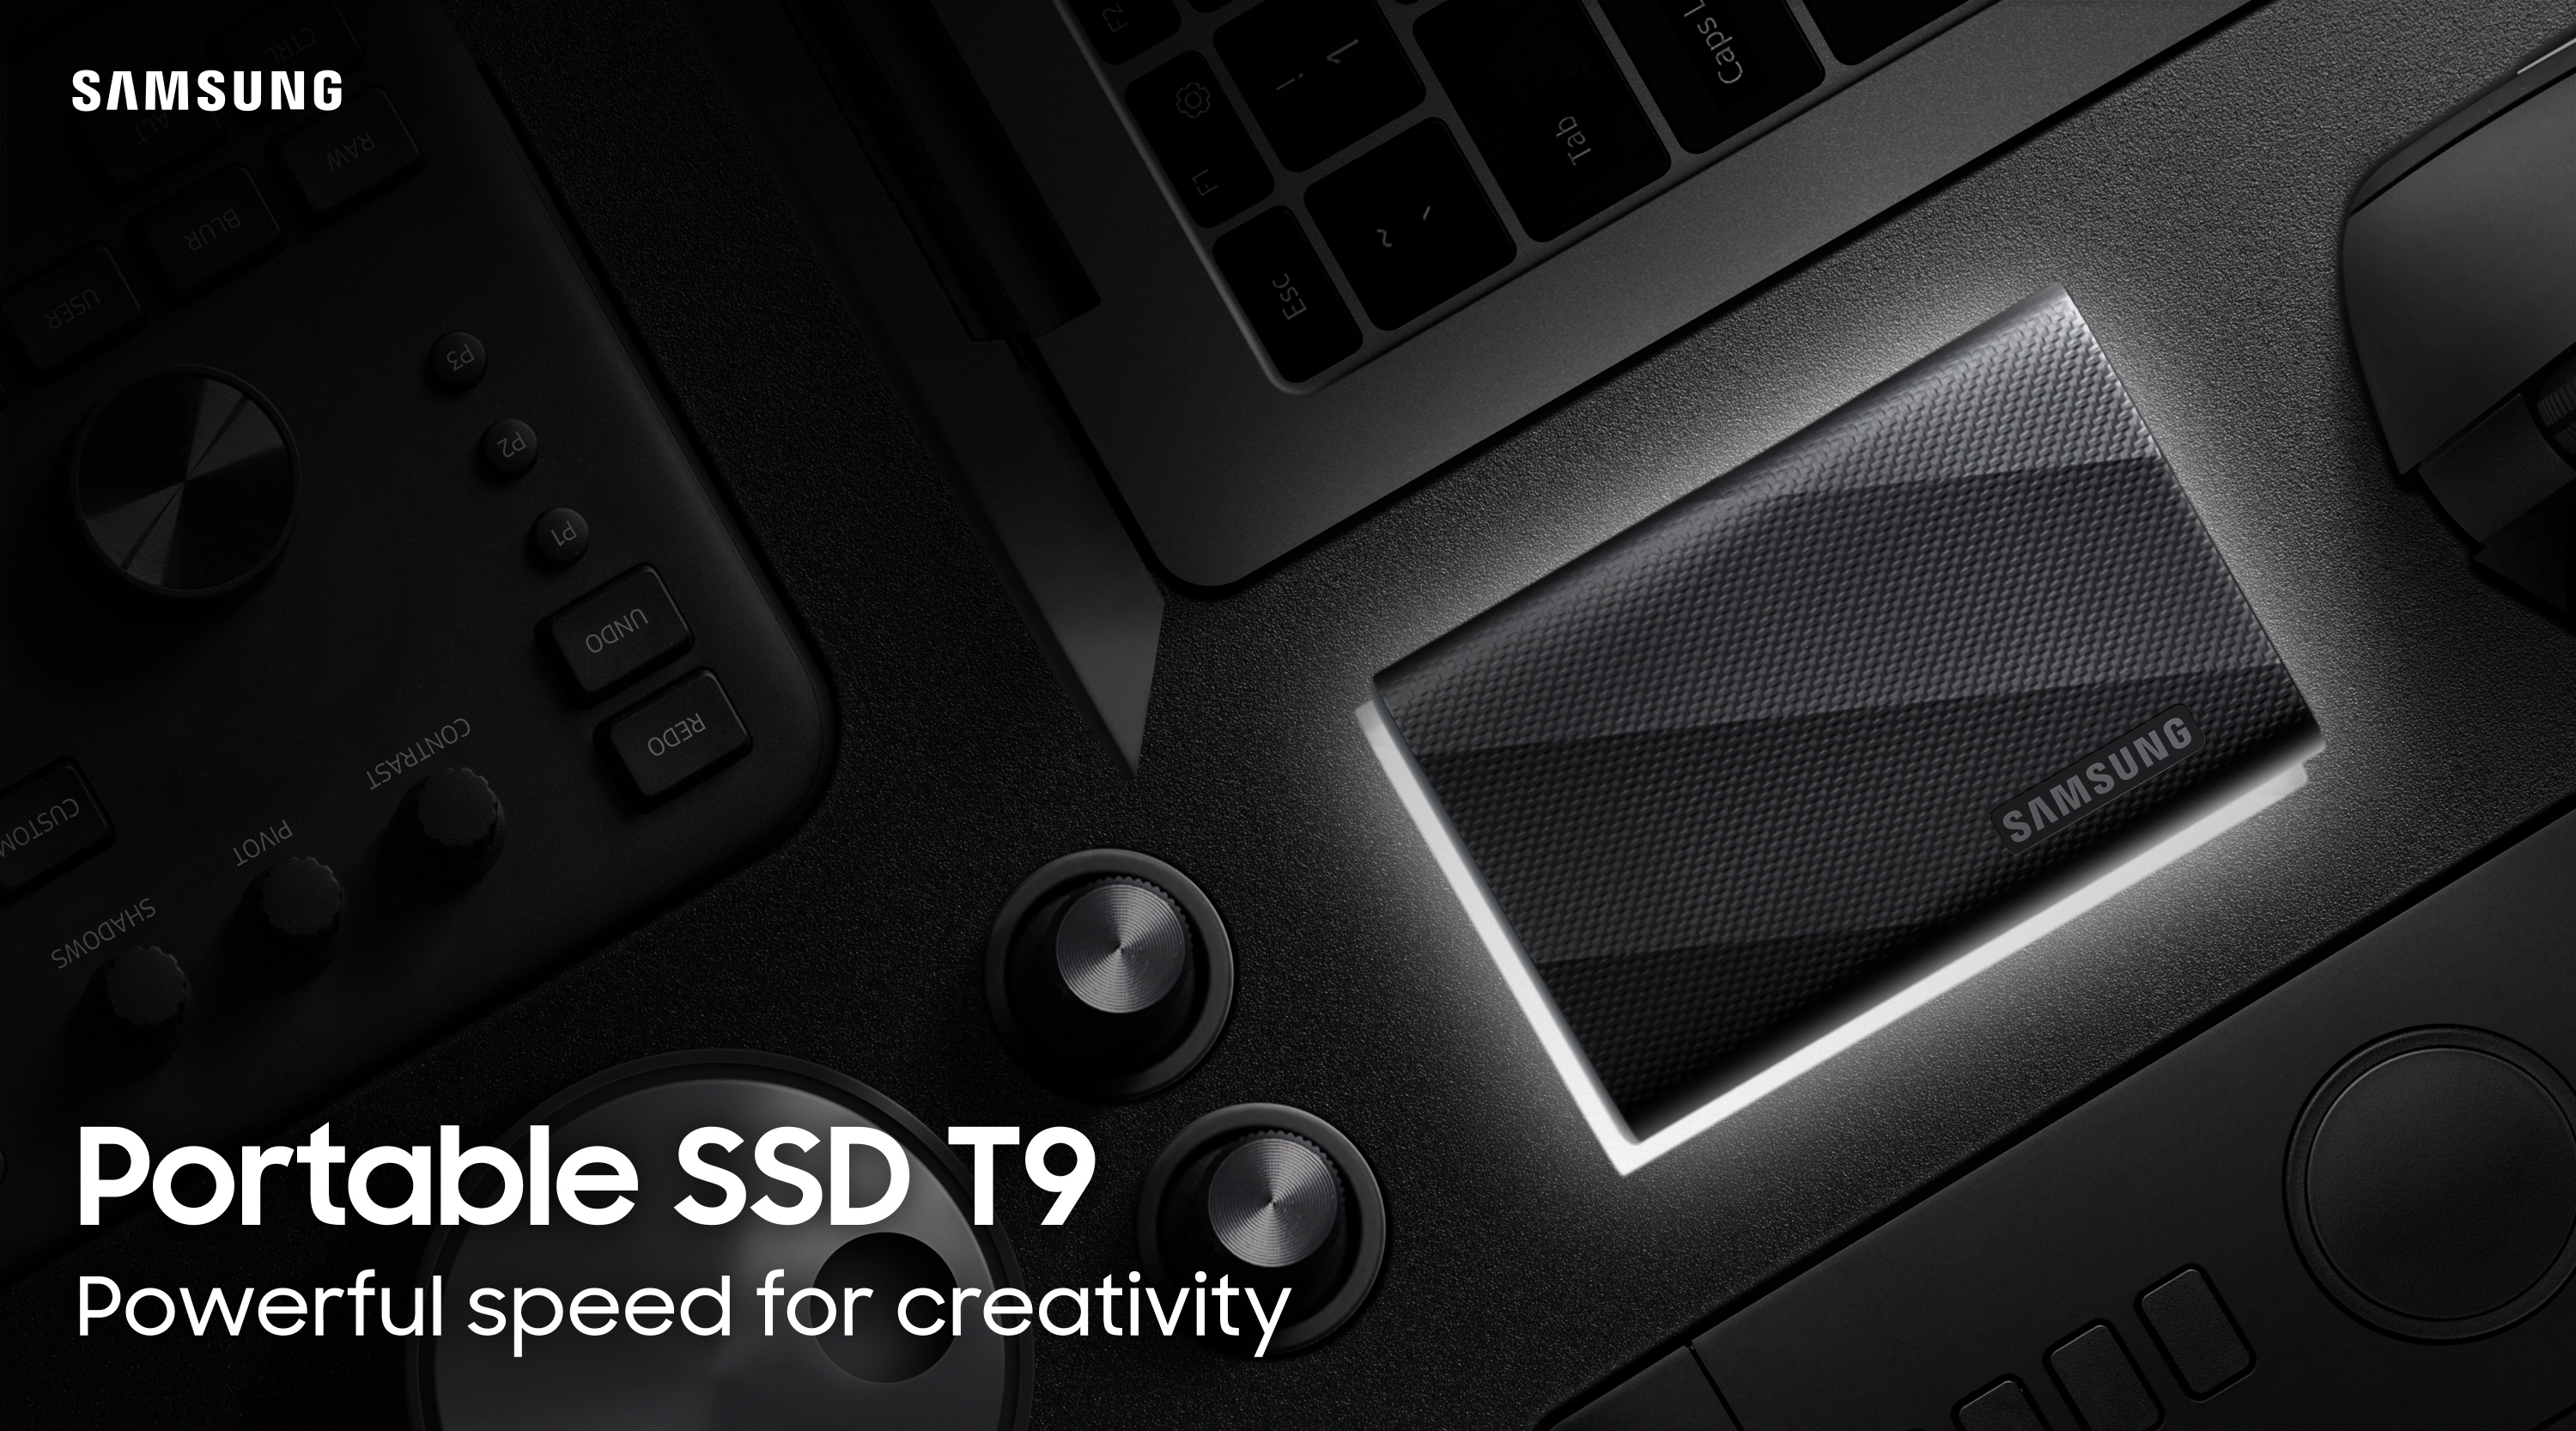 Samsung Portable SSD T9: capacidad de almacenamiento de hasta 4 TB, interfaz USB 3.2 Gen 2×2 y velocidades de lectura de hasta 2000 MB/seg.